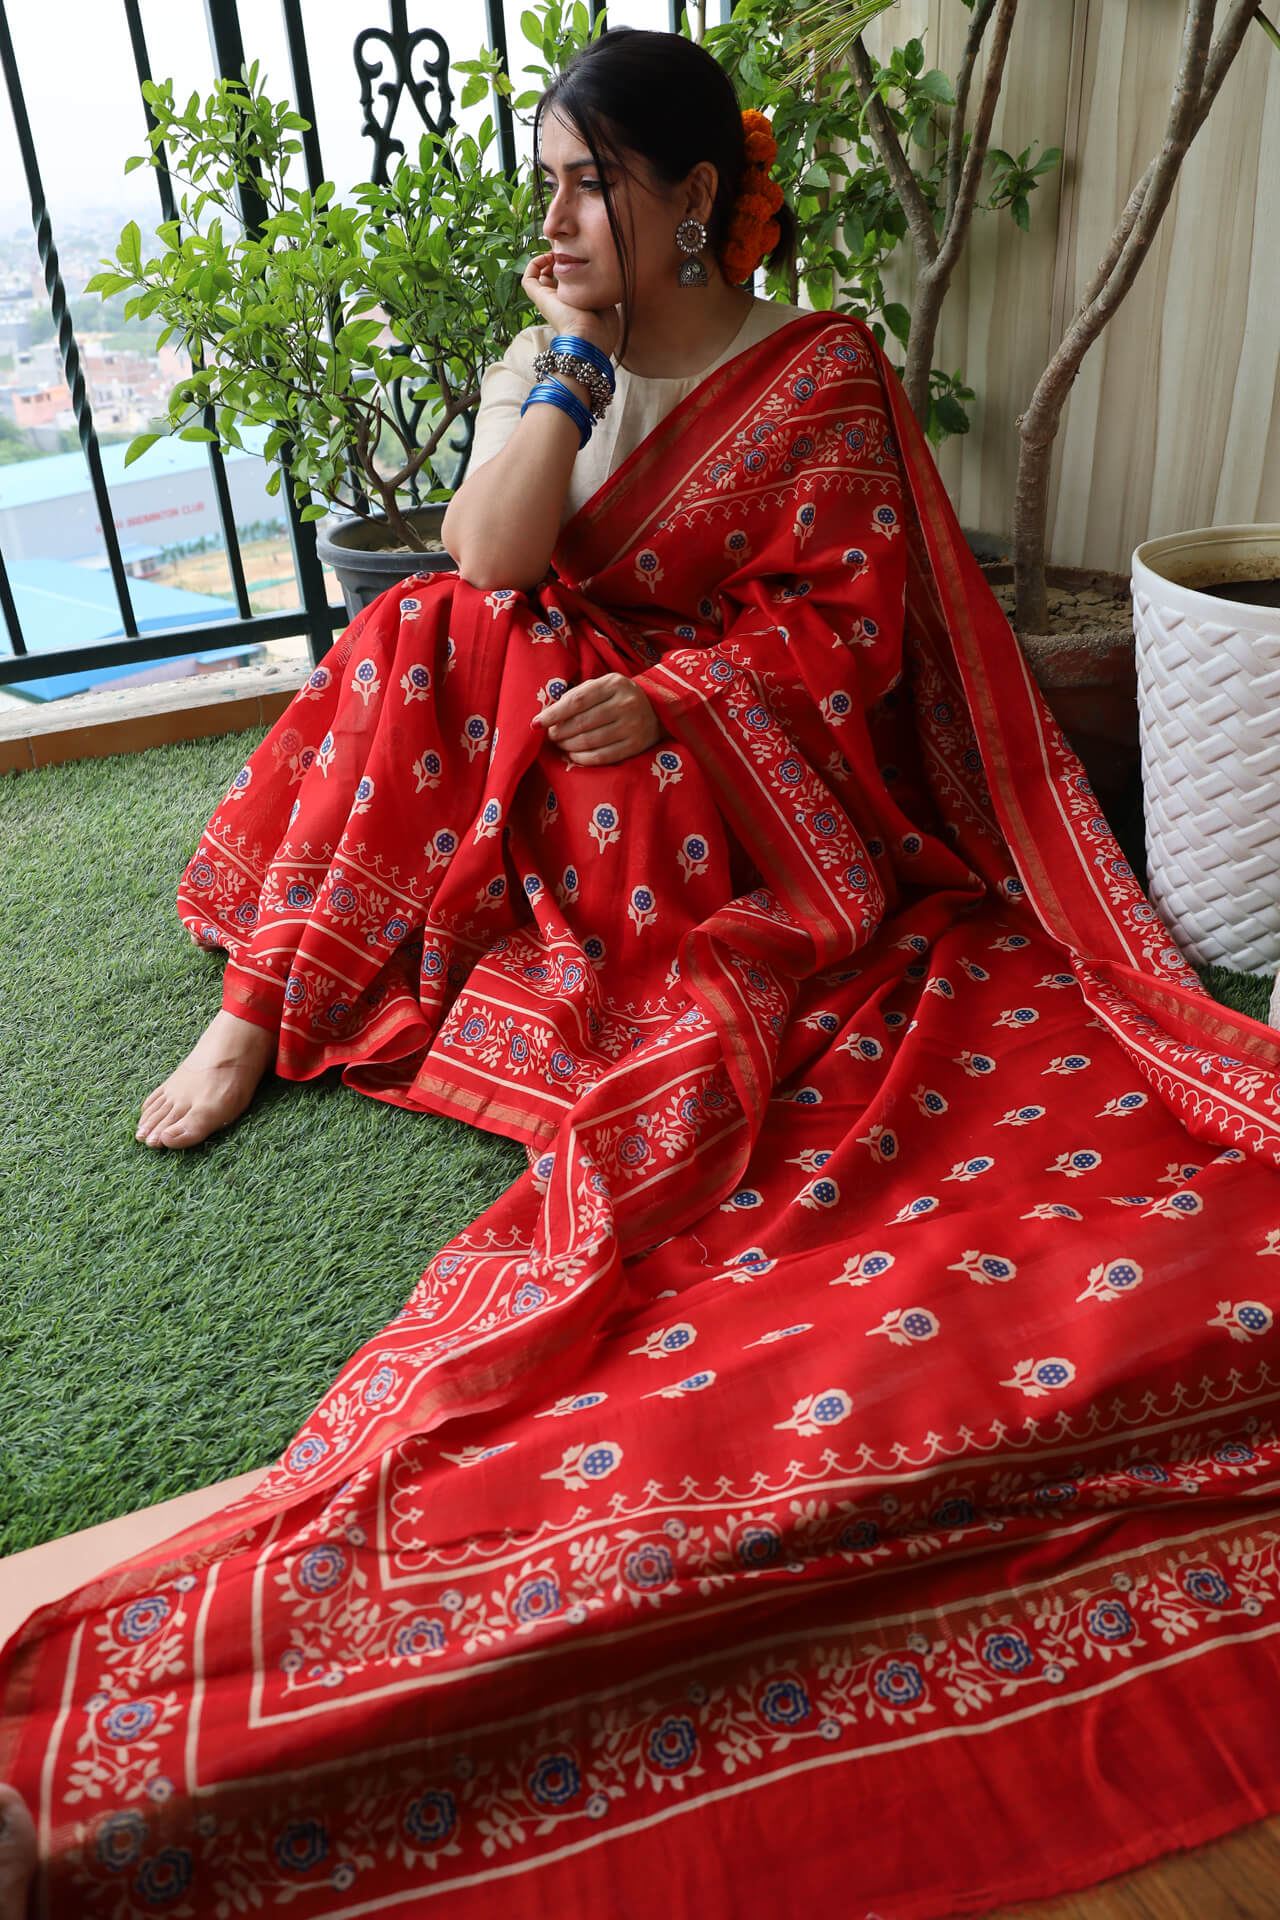 Katrina Kaif Saree On Her Wedding Days | Katrina Kaif Saree